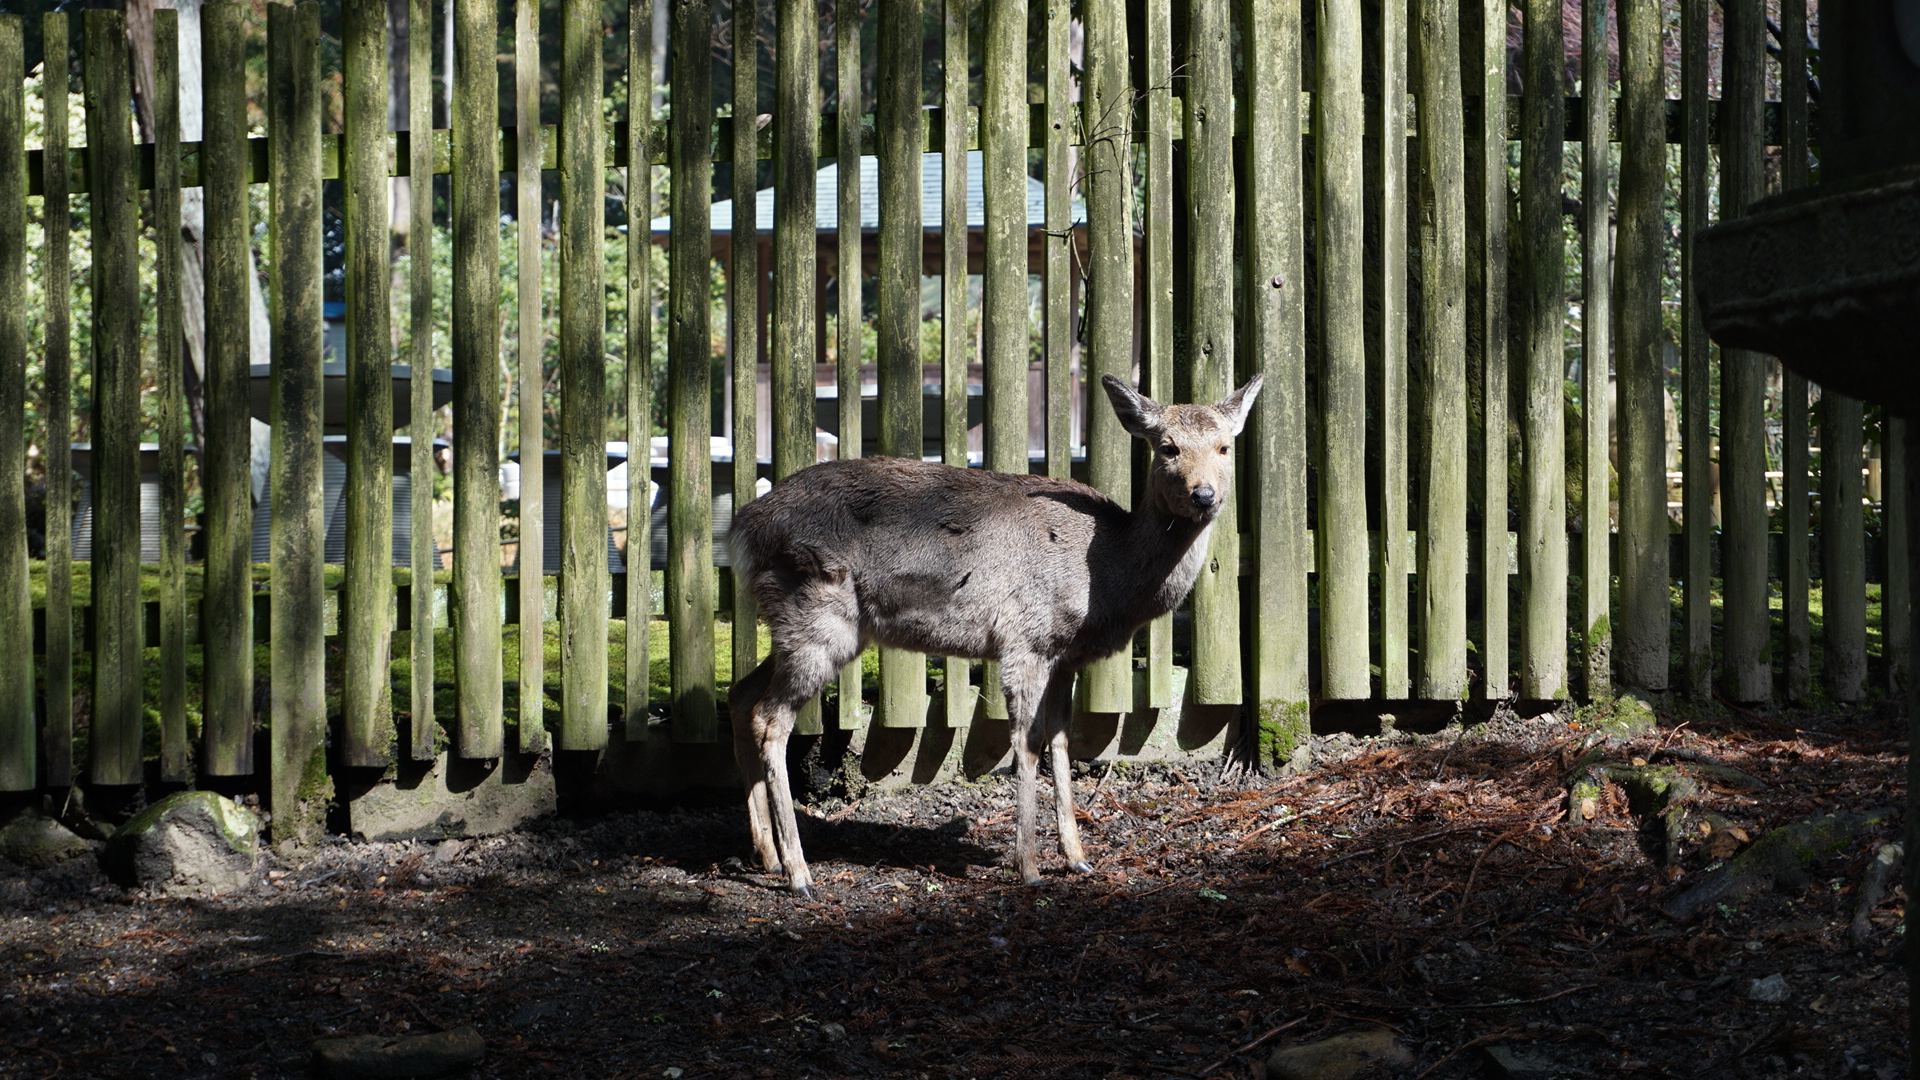 冬天奈良公园还有小鹿吗 马蜂窝问答